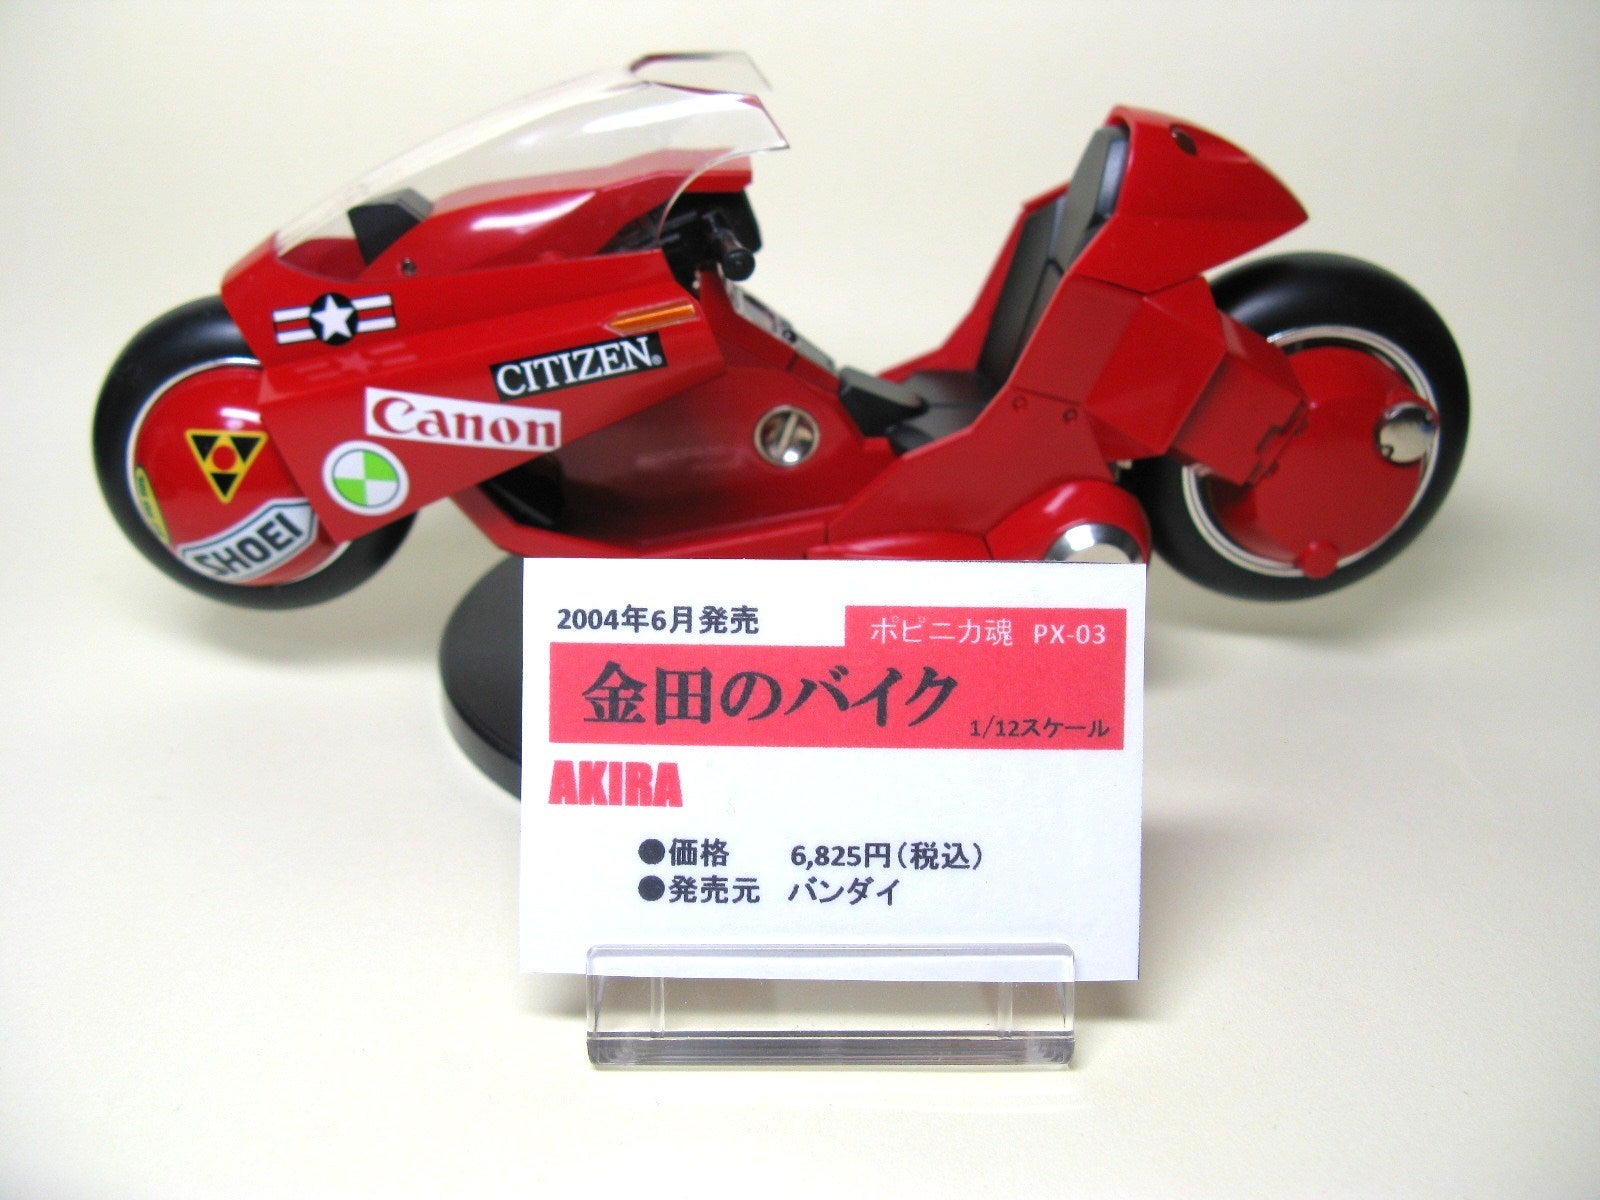 ポピニカ魂 金田のバイク PX-03